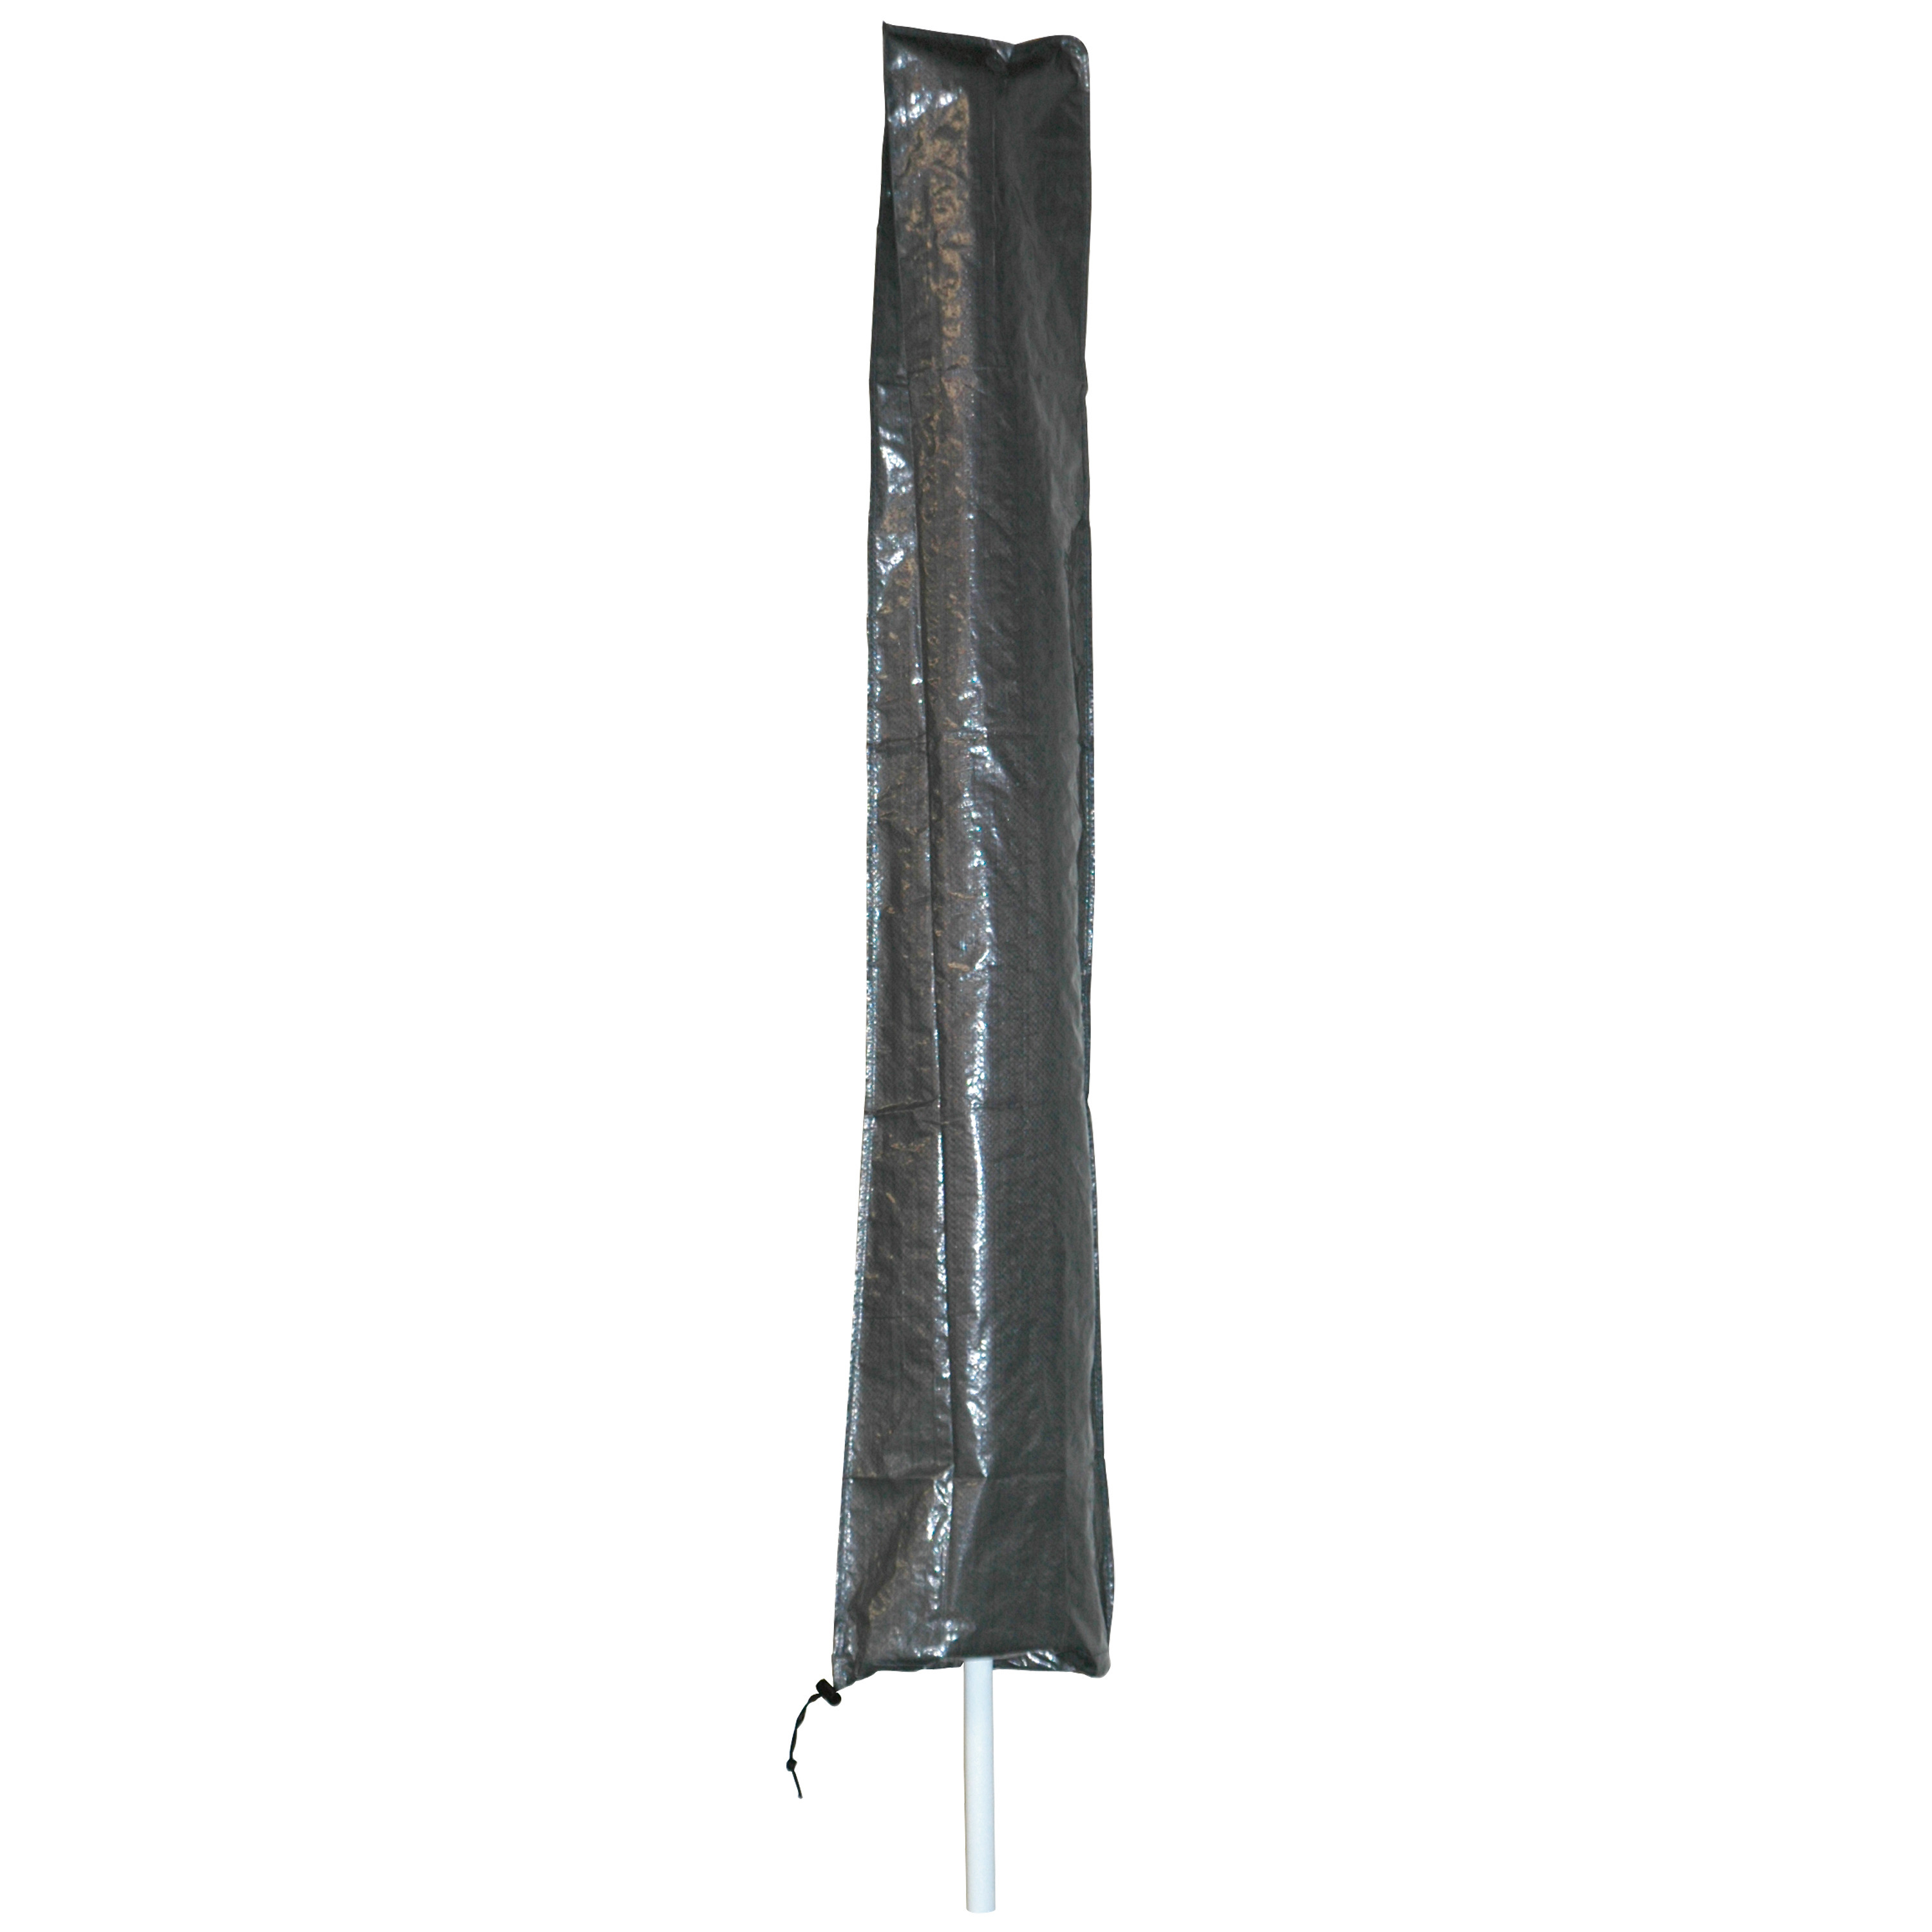 Afdekhoes-beschermhoes grijs voor parasols met een diameter van 2 m